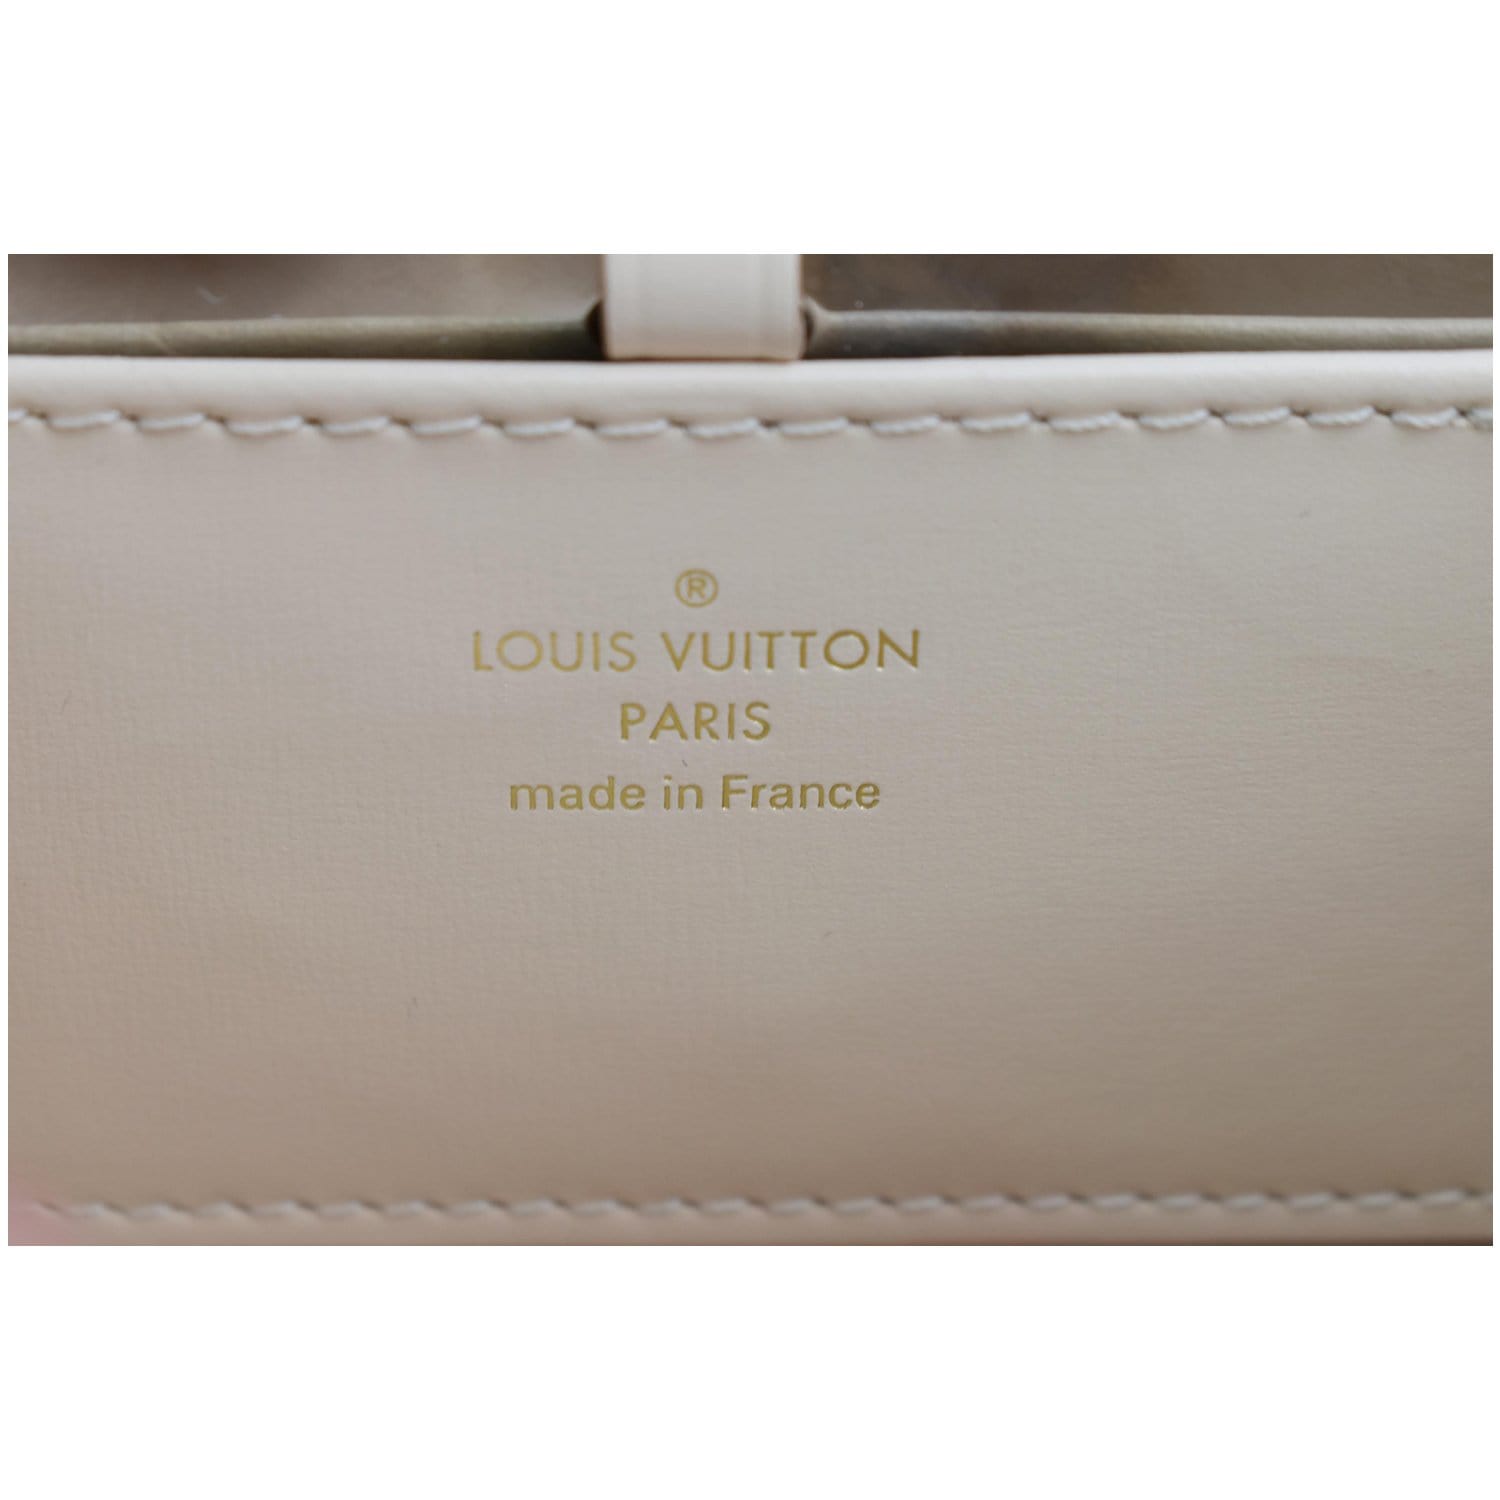 Purseonals: Louis Vuitton Rose Des Vents - PurseBlog